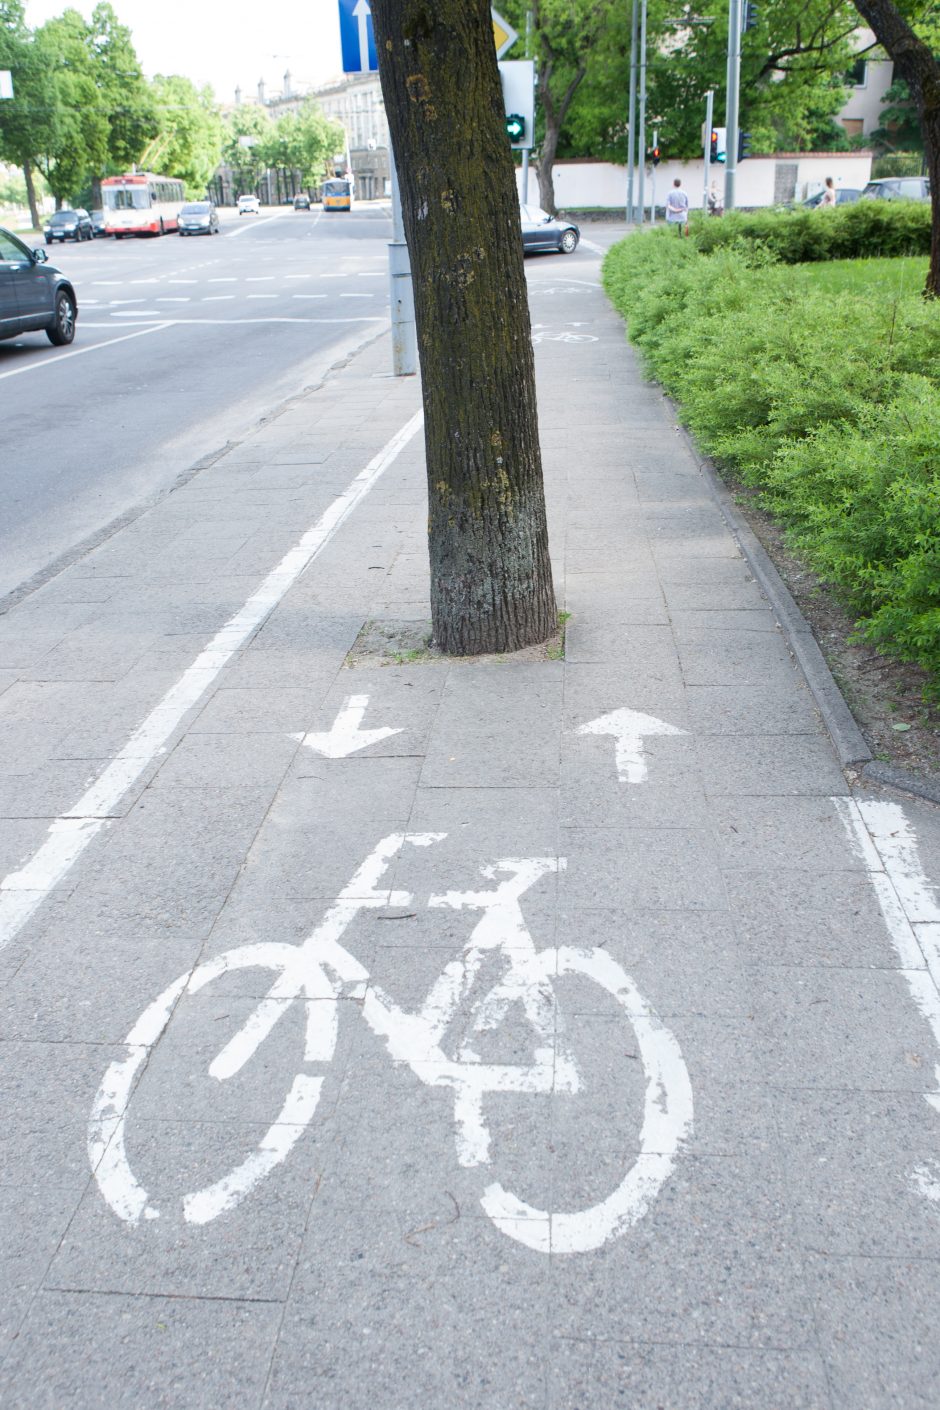 Kas kaltas dėl dviratininkų nelaimių – atsargumo ar dviračių takų stoka?